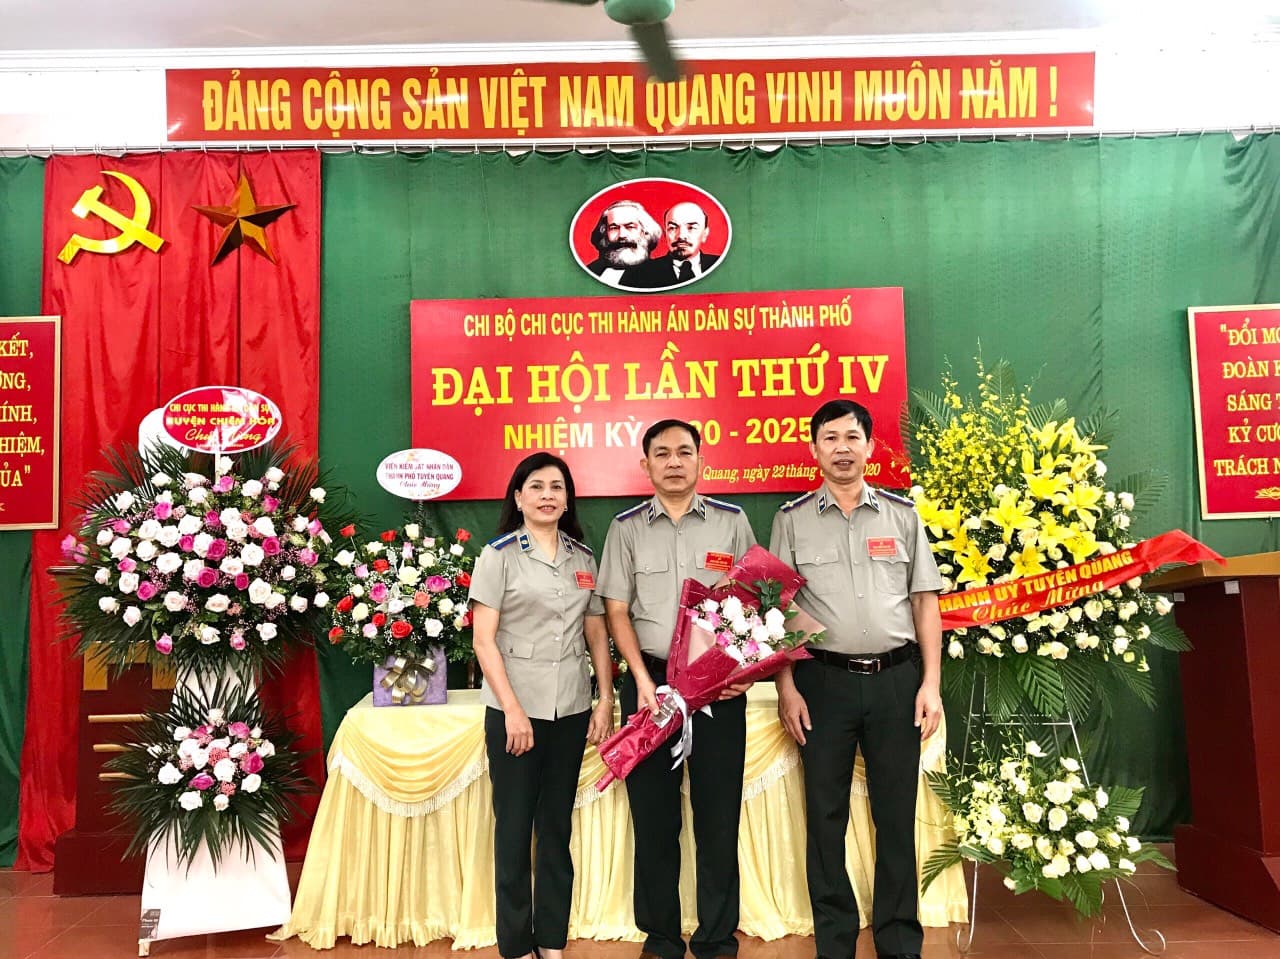 Chi bộ Chi cục Thi hành án dân sự thành phố Tuyên Quang tổ chức thành công Đại hội Chi bộ lần thứ IV, nhiệm kỳ 2020-2025